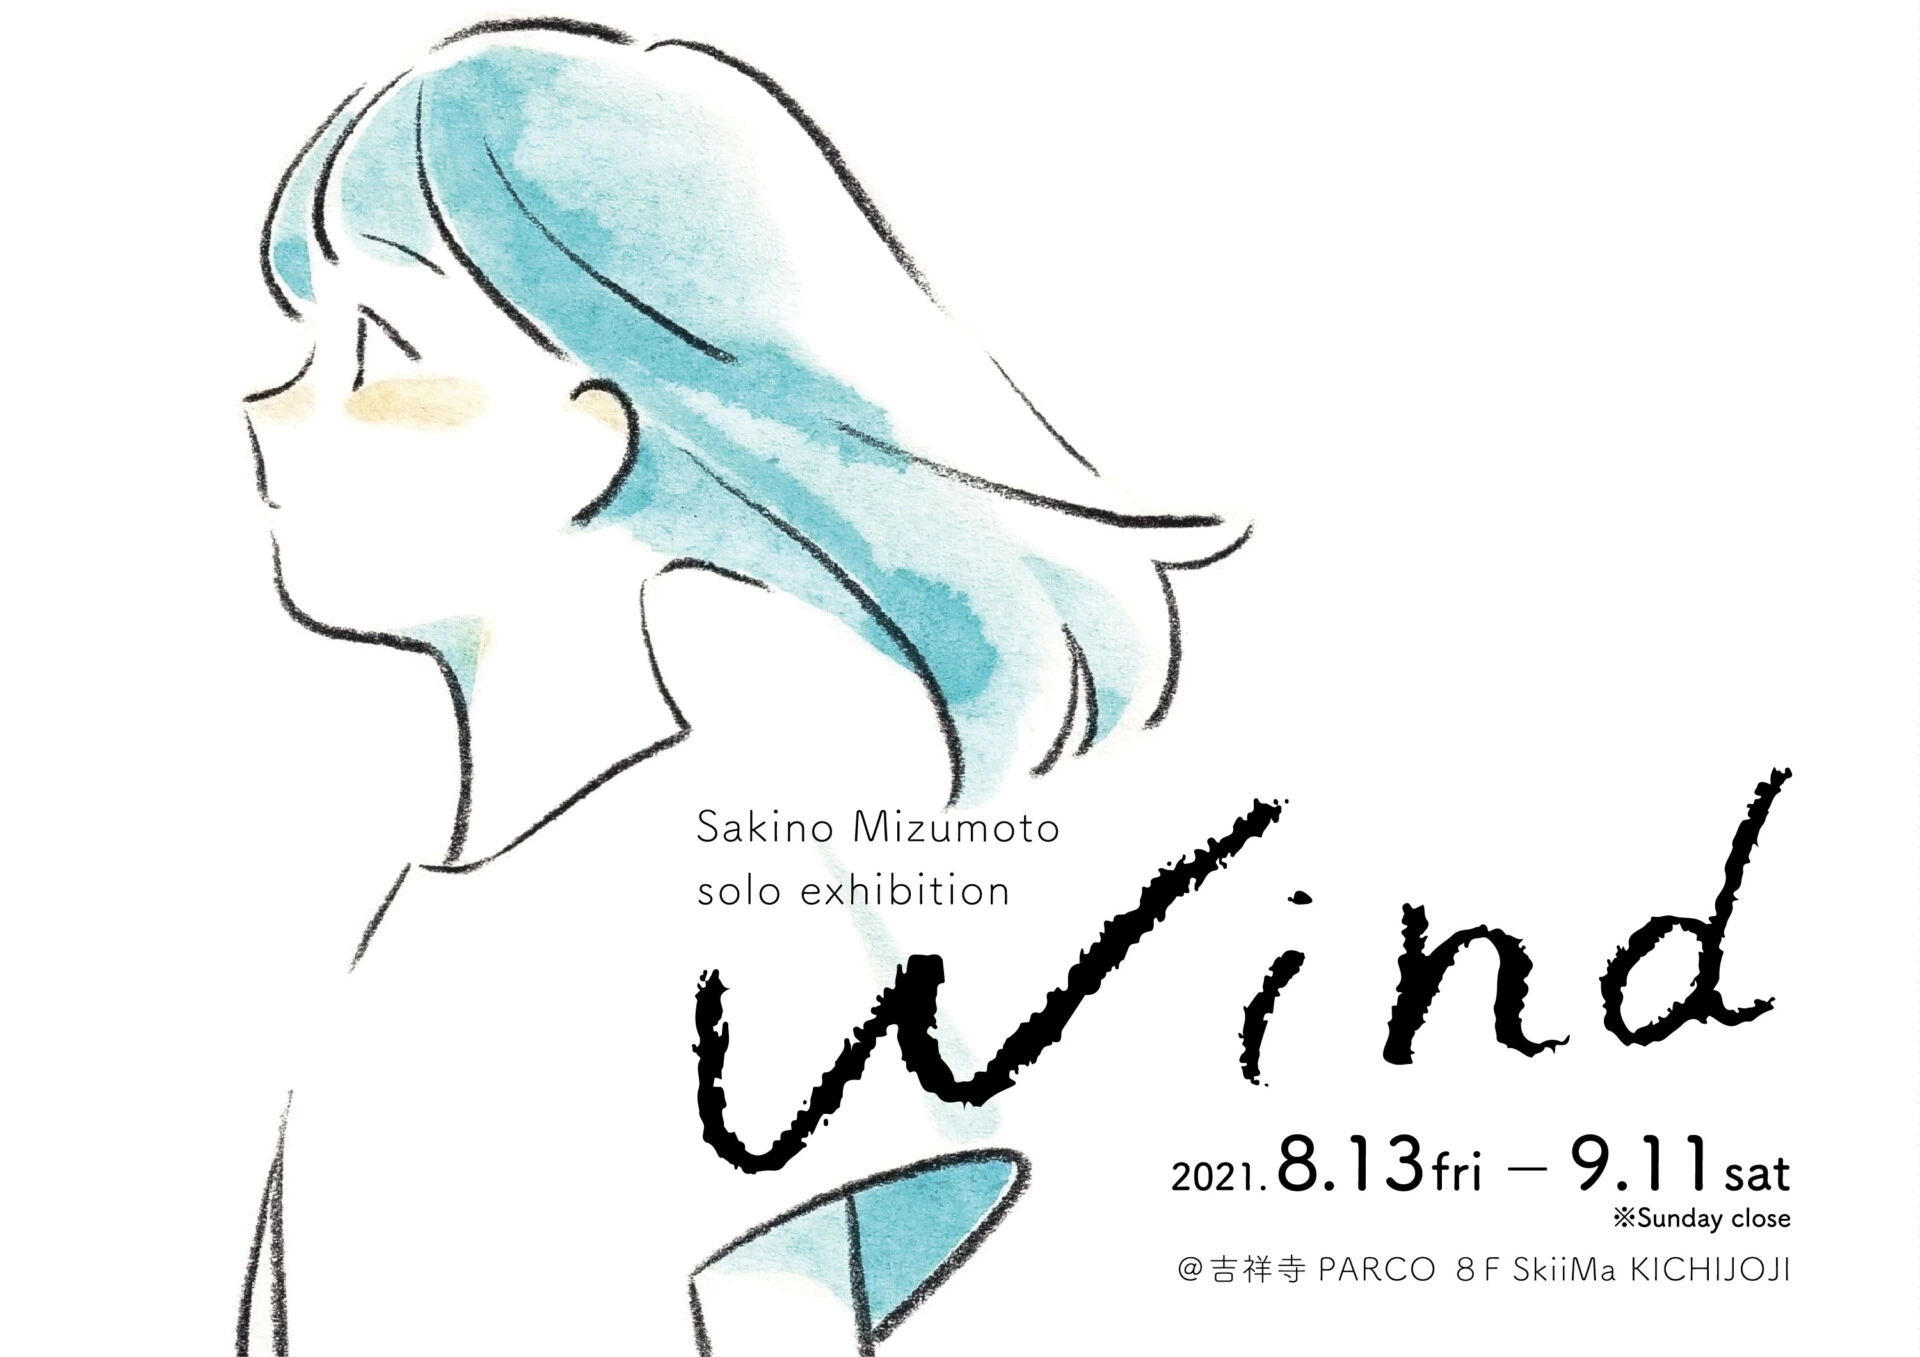 水元さきのSolo Exhibition「Wind」